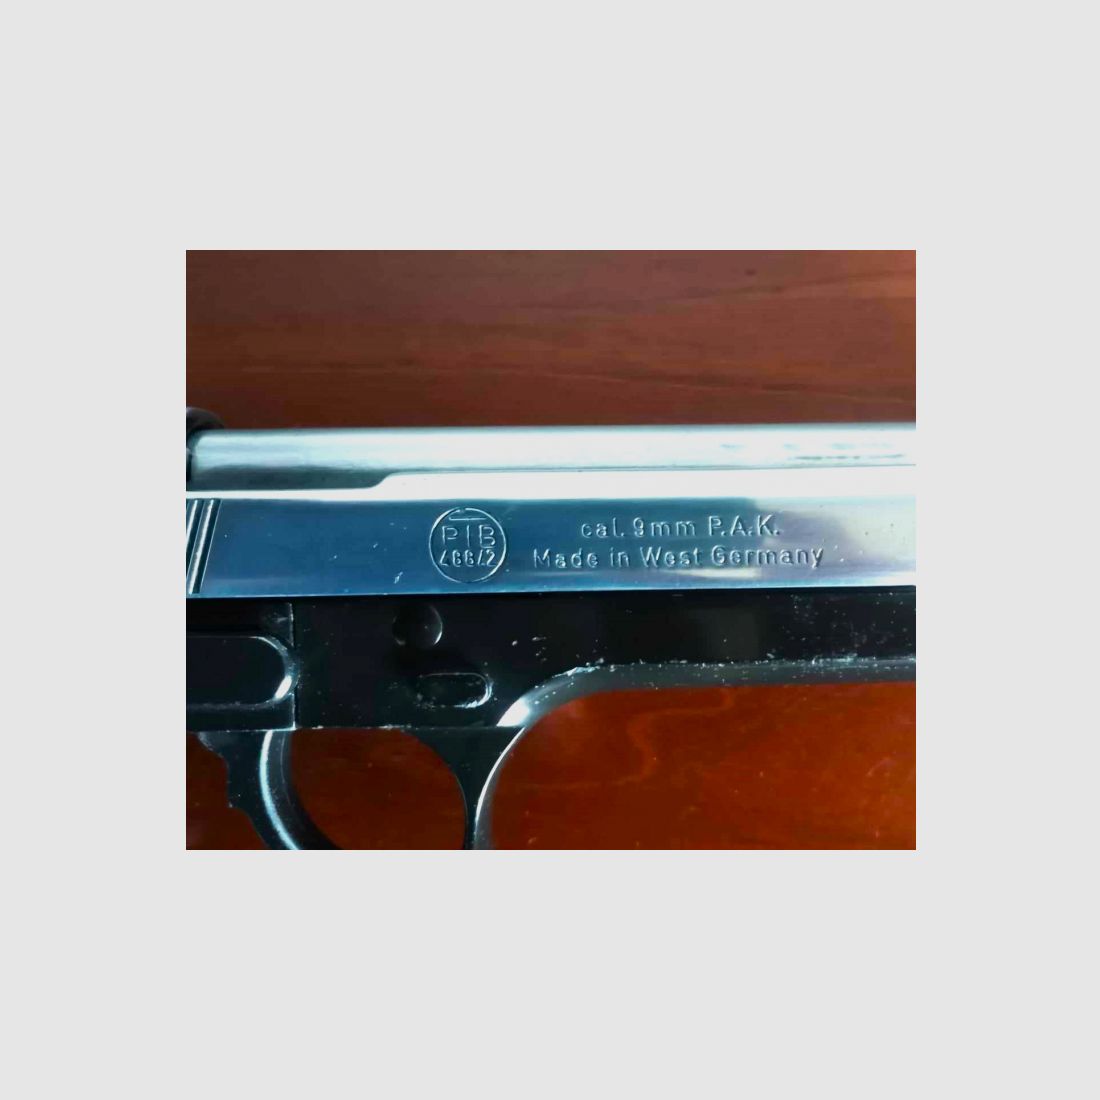 Reck Miami 92F PTB 488/2 Pistole Sammler Klassiker